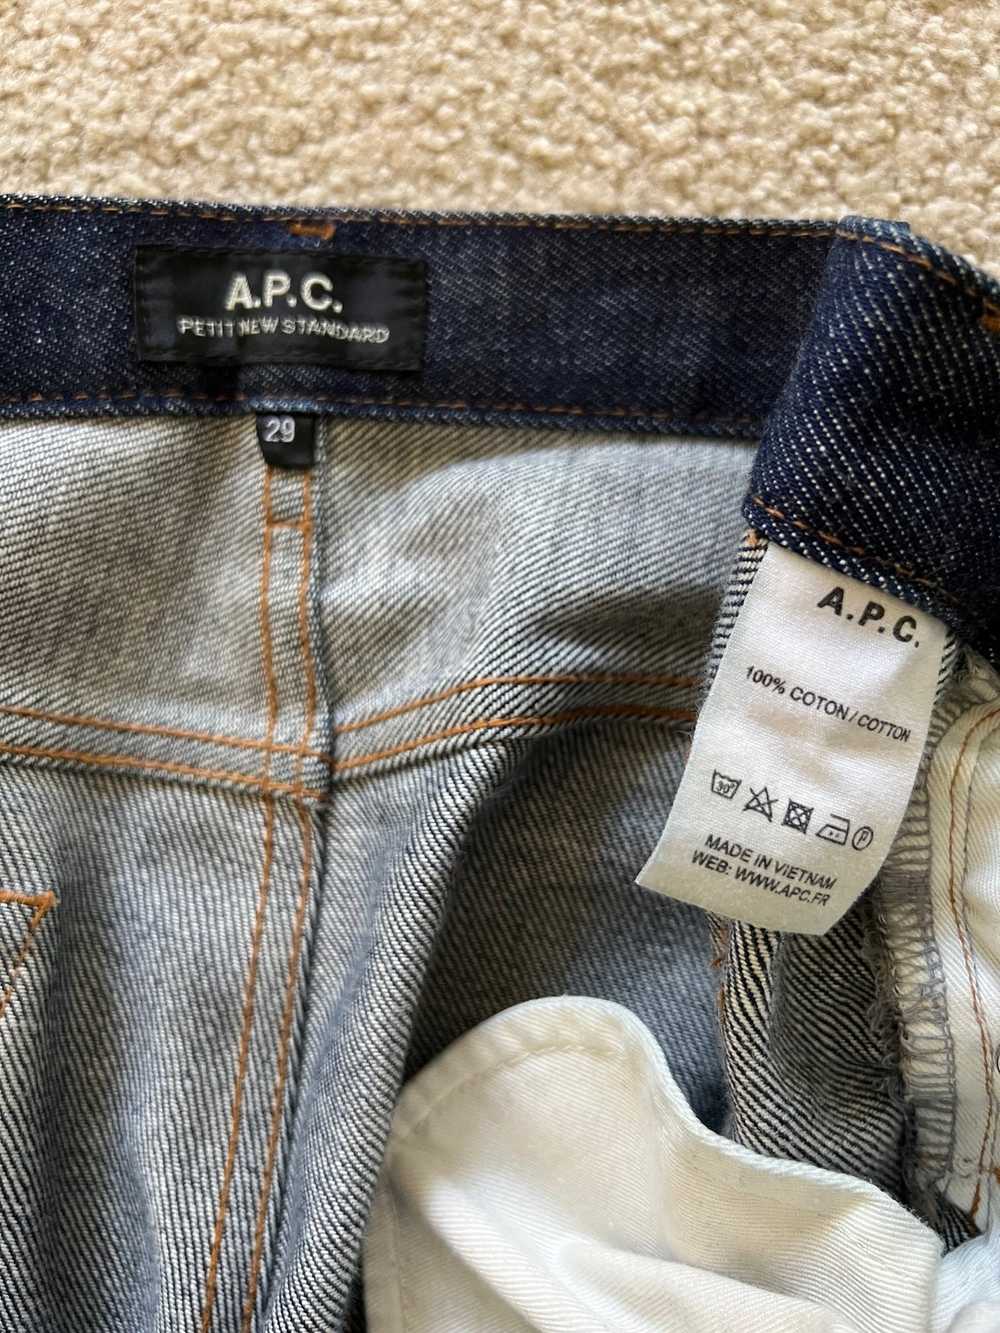 A.P.C. APC A.P.C. Petit New Standard Jeans Selved… - image 4